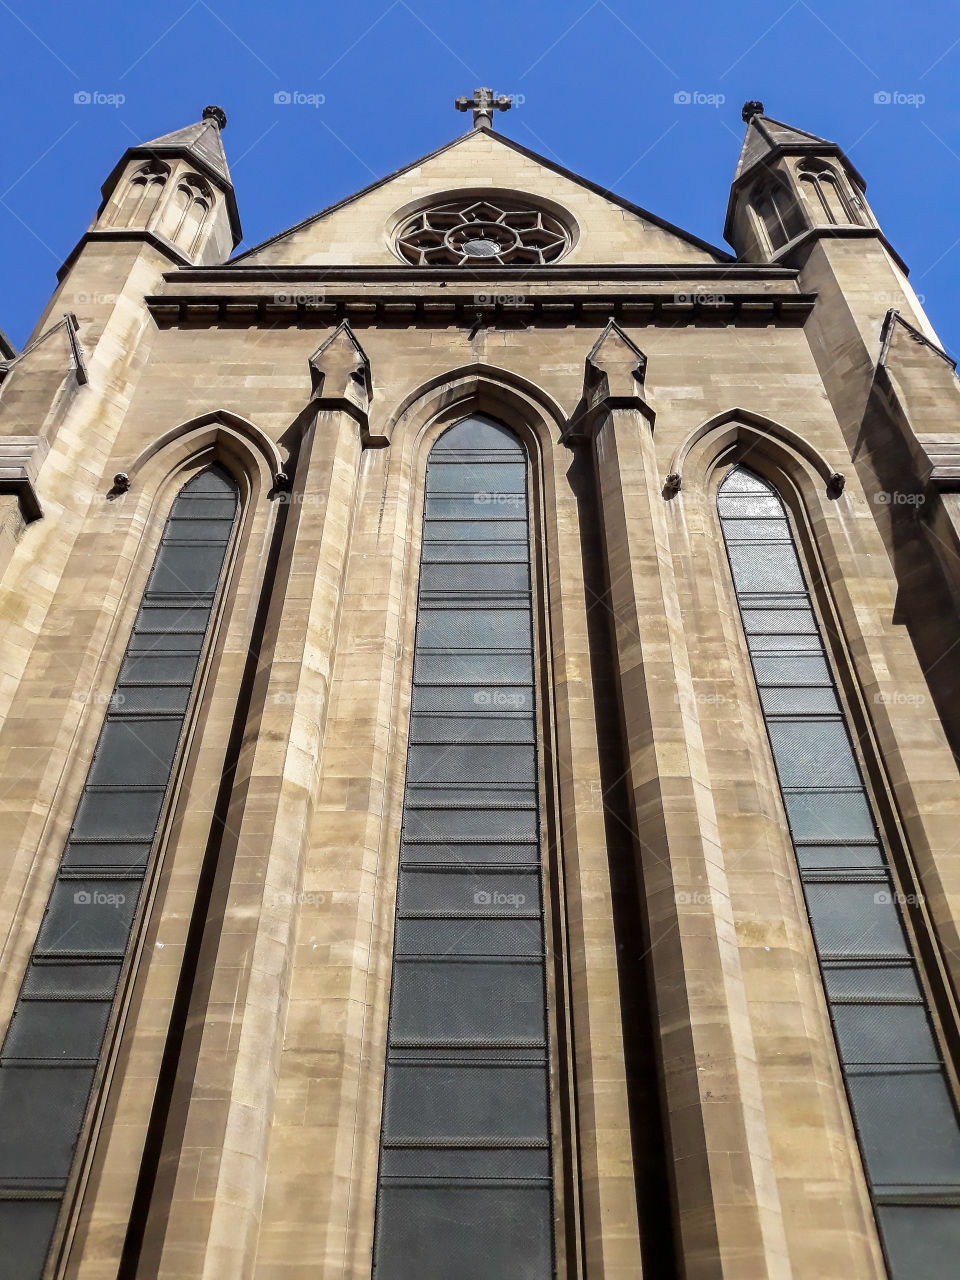 Church in paris.